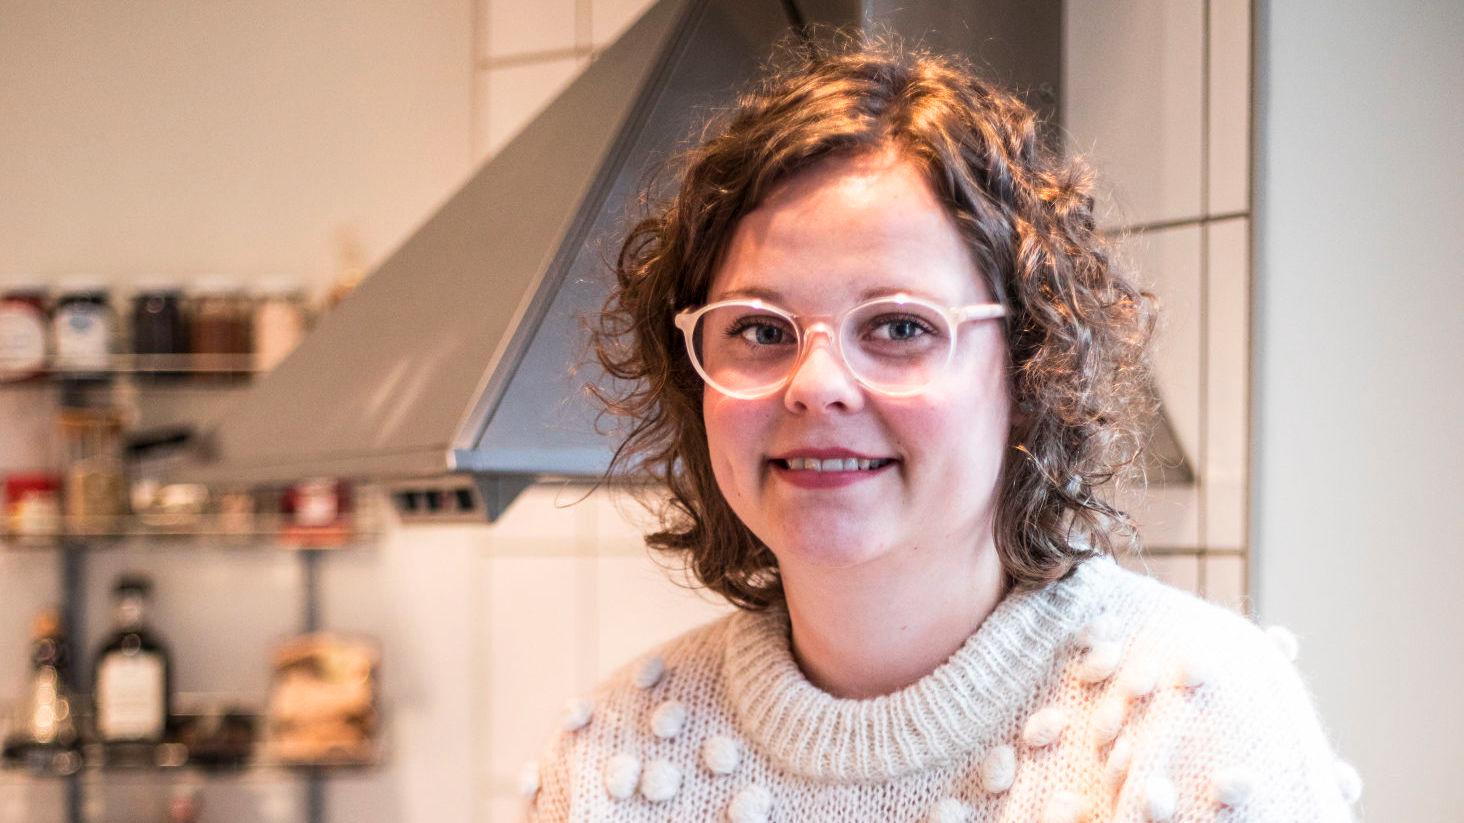 BARNDOMSMINNER: Eline Gulbrandsen synes fortsatt at farens tomatsuppe er det beste hun kan få servert. Foto: Thomas Andreassen